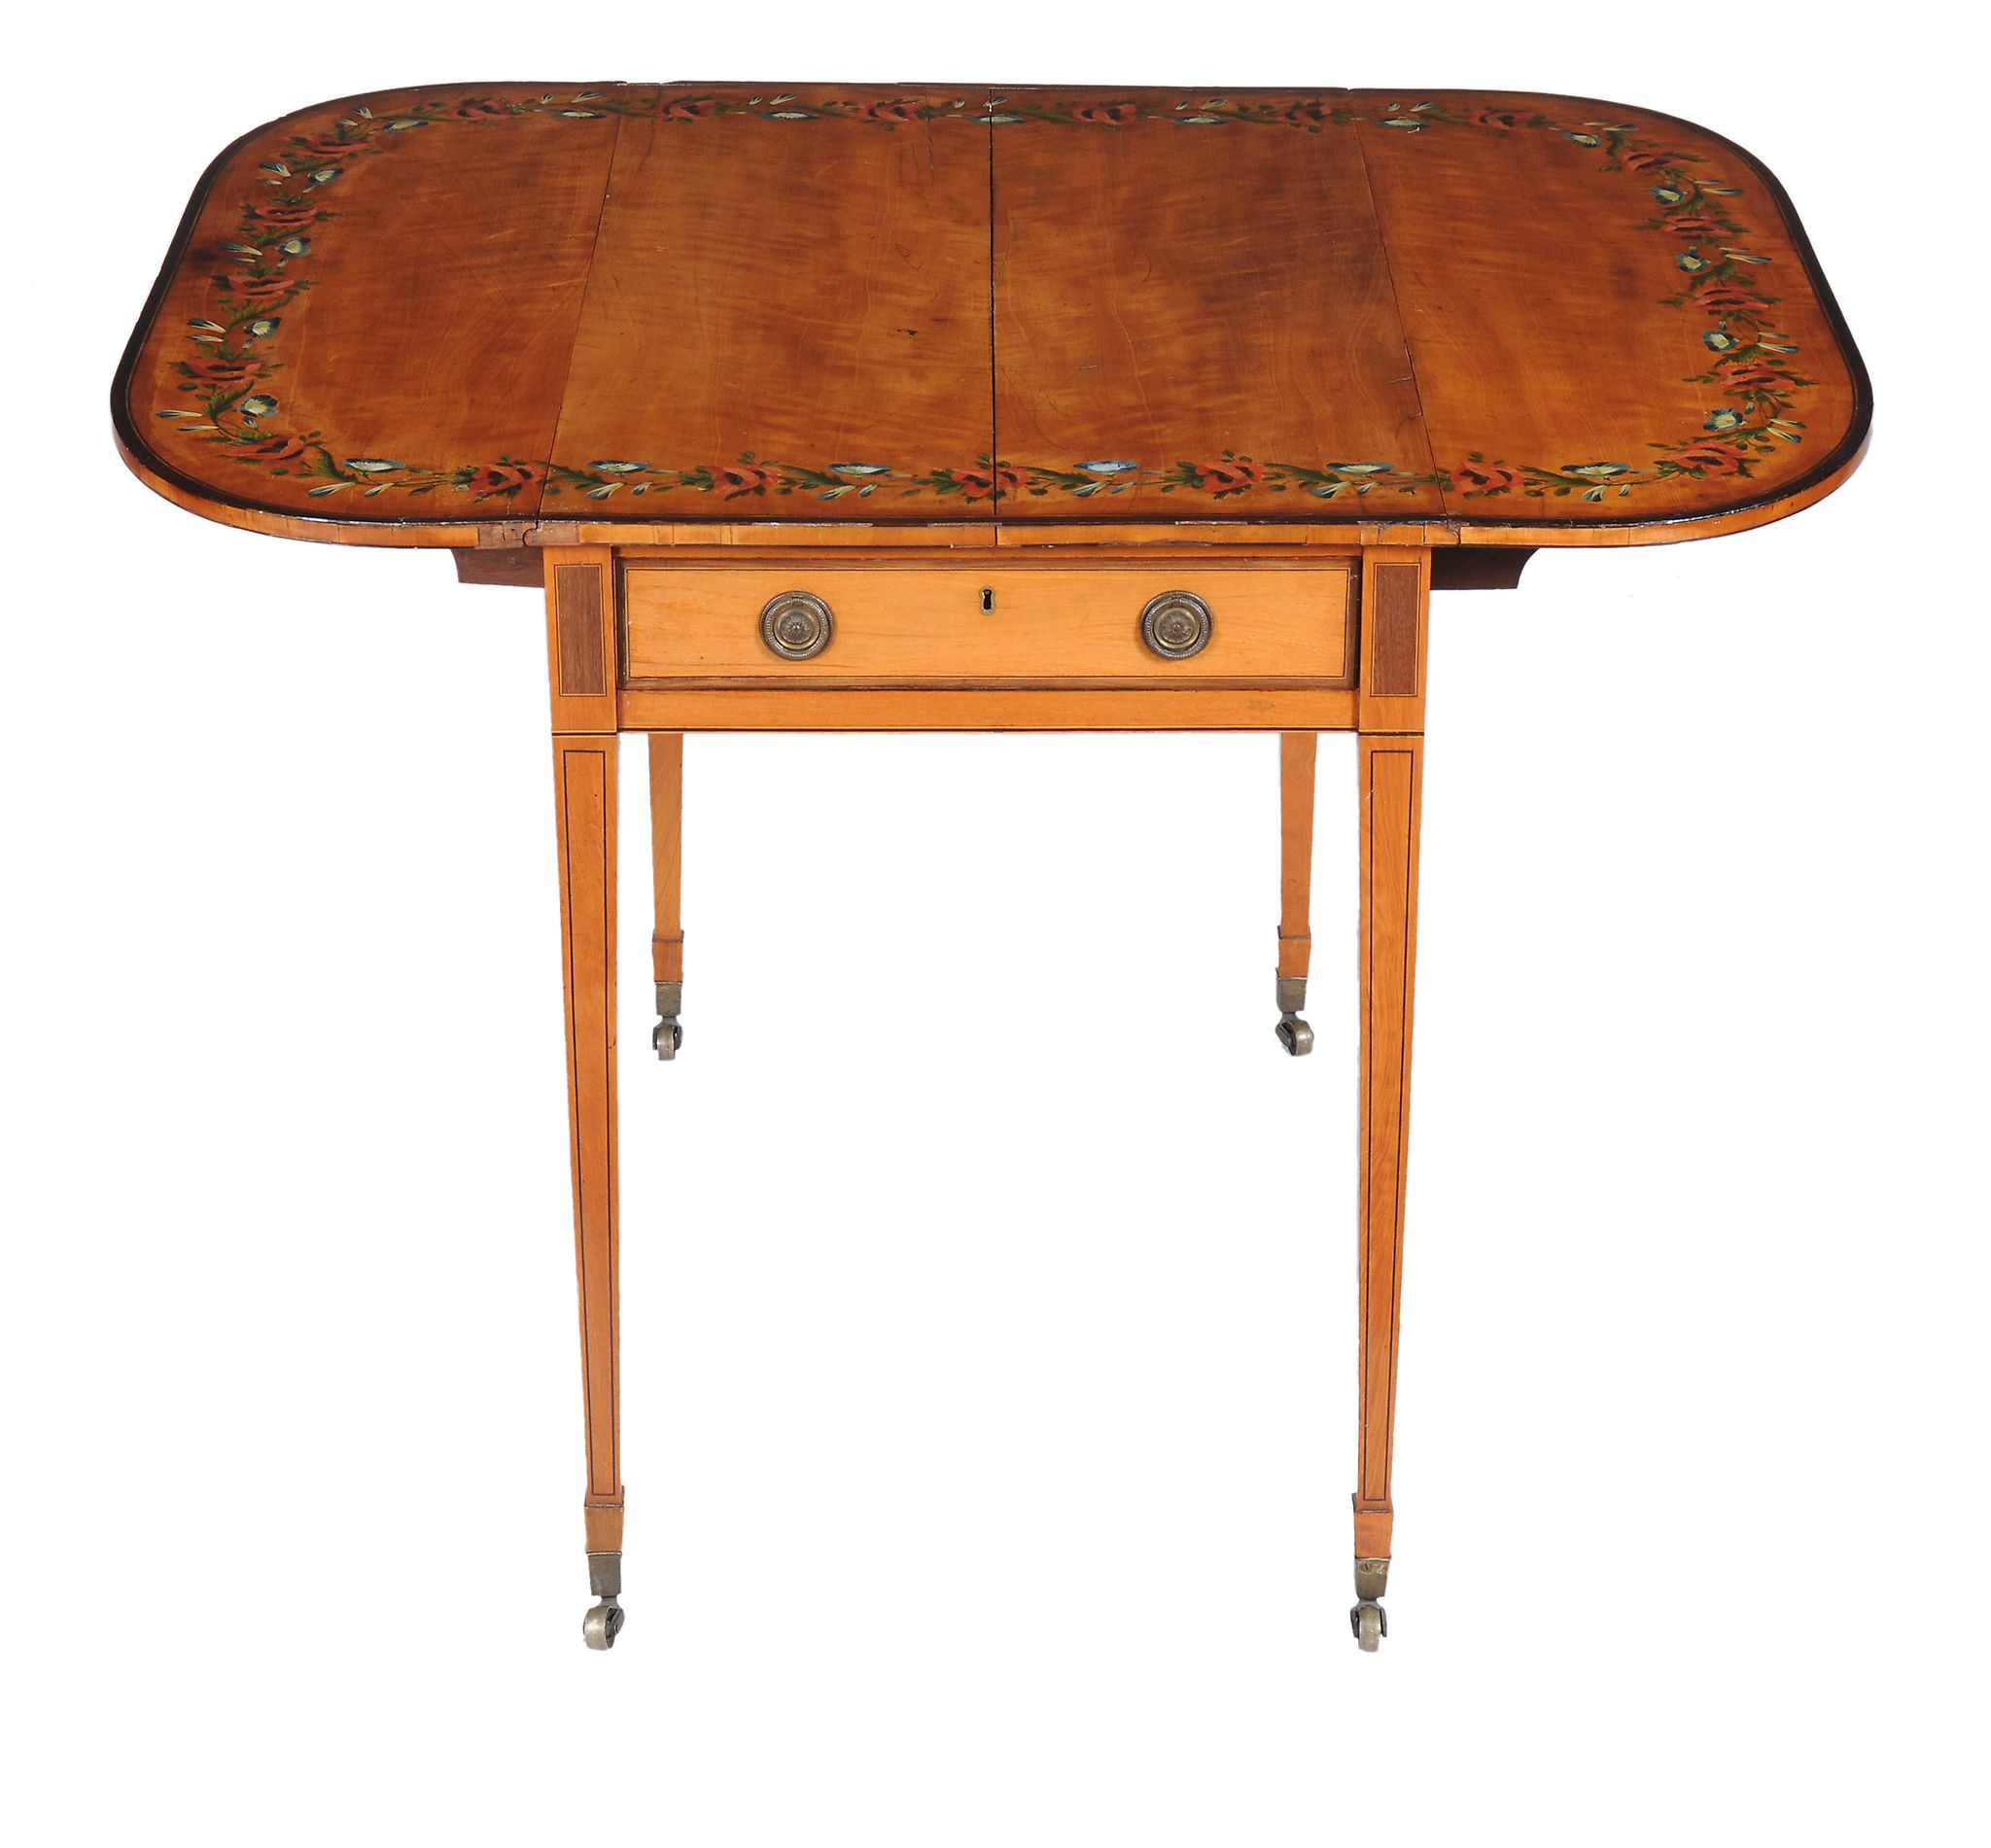 Ω A George III satinwood and rosewood banded Pembroke table in the manner of Thomas Sheraton, with - Image 2 of 4